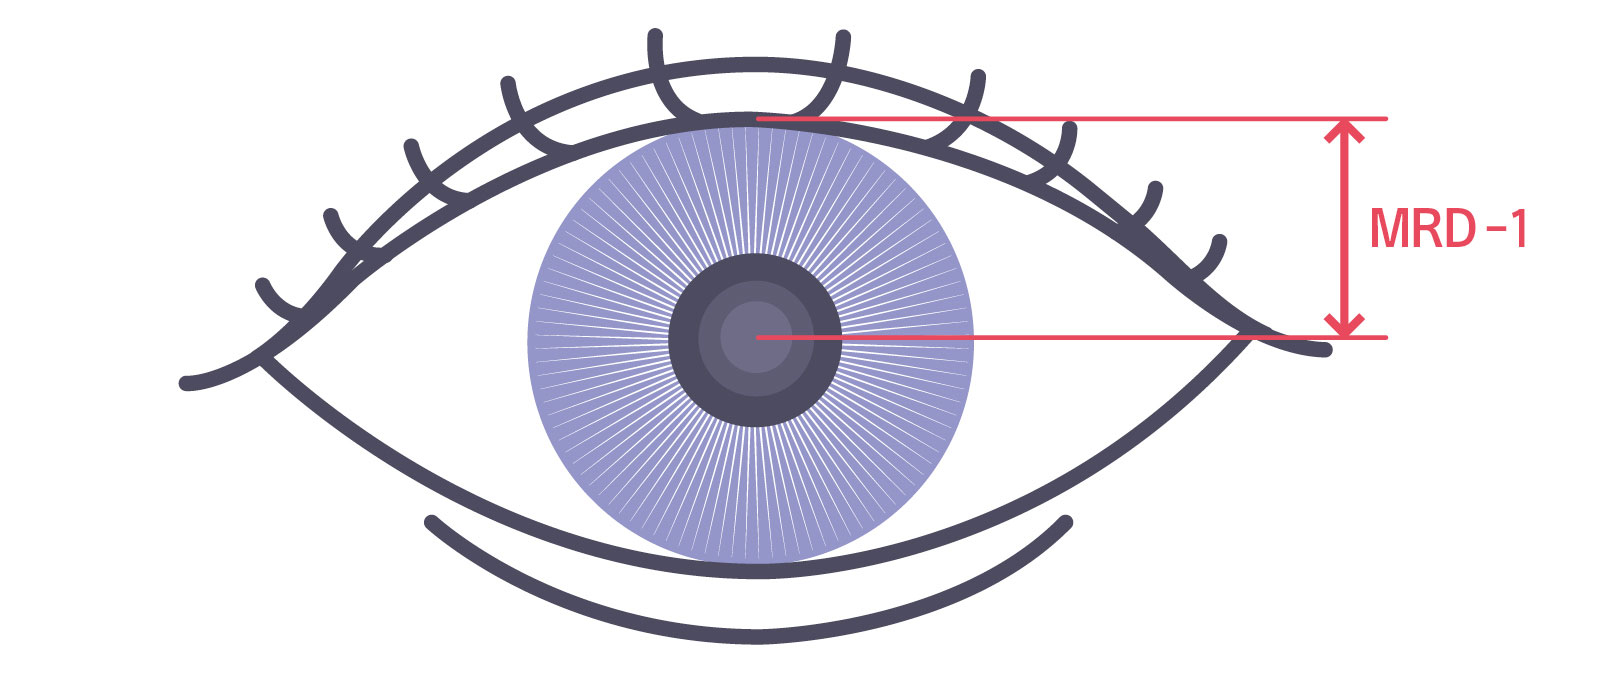 医療機関で眼瞼下垂の程度を診断する際に測定する数値 MRD-1（marginal reflex distance-1）